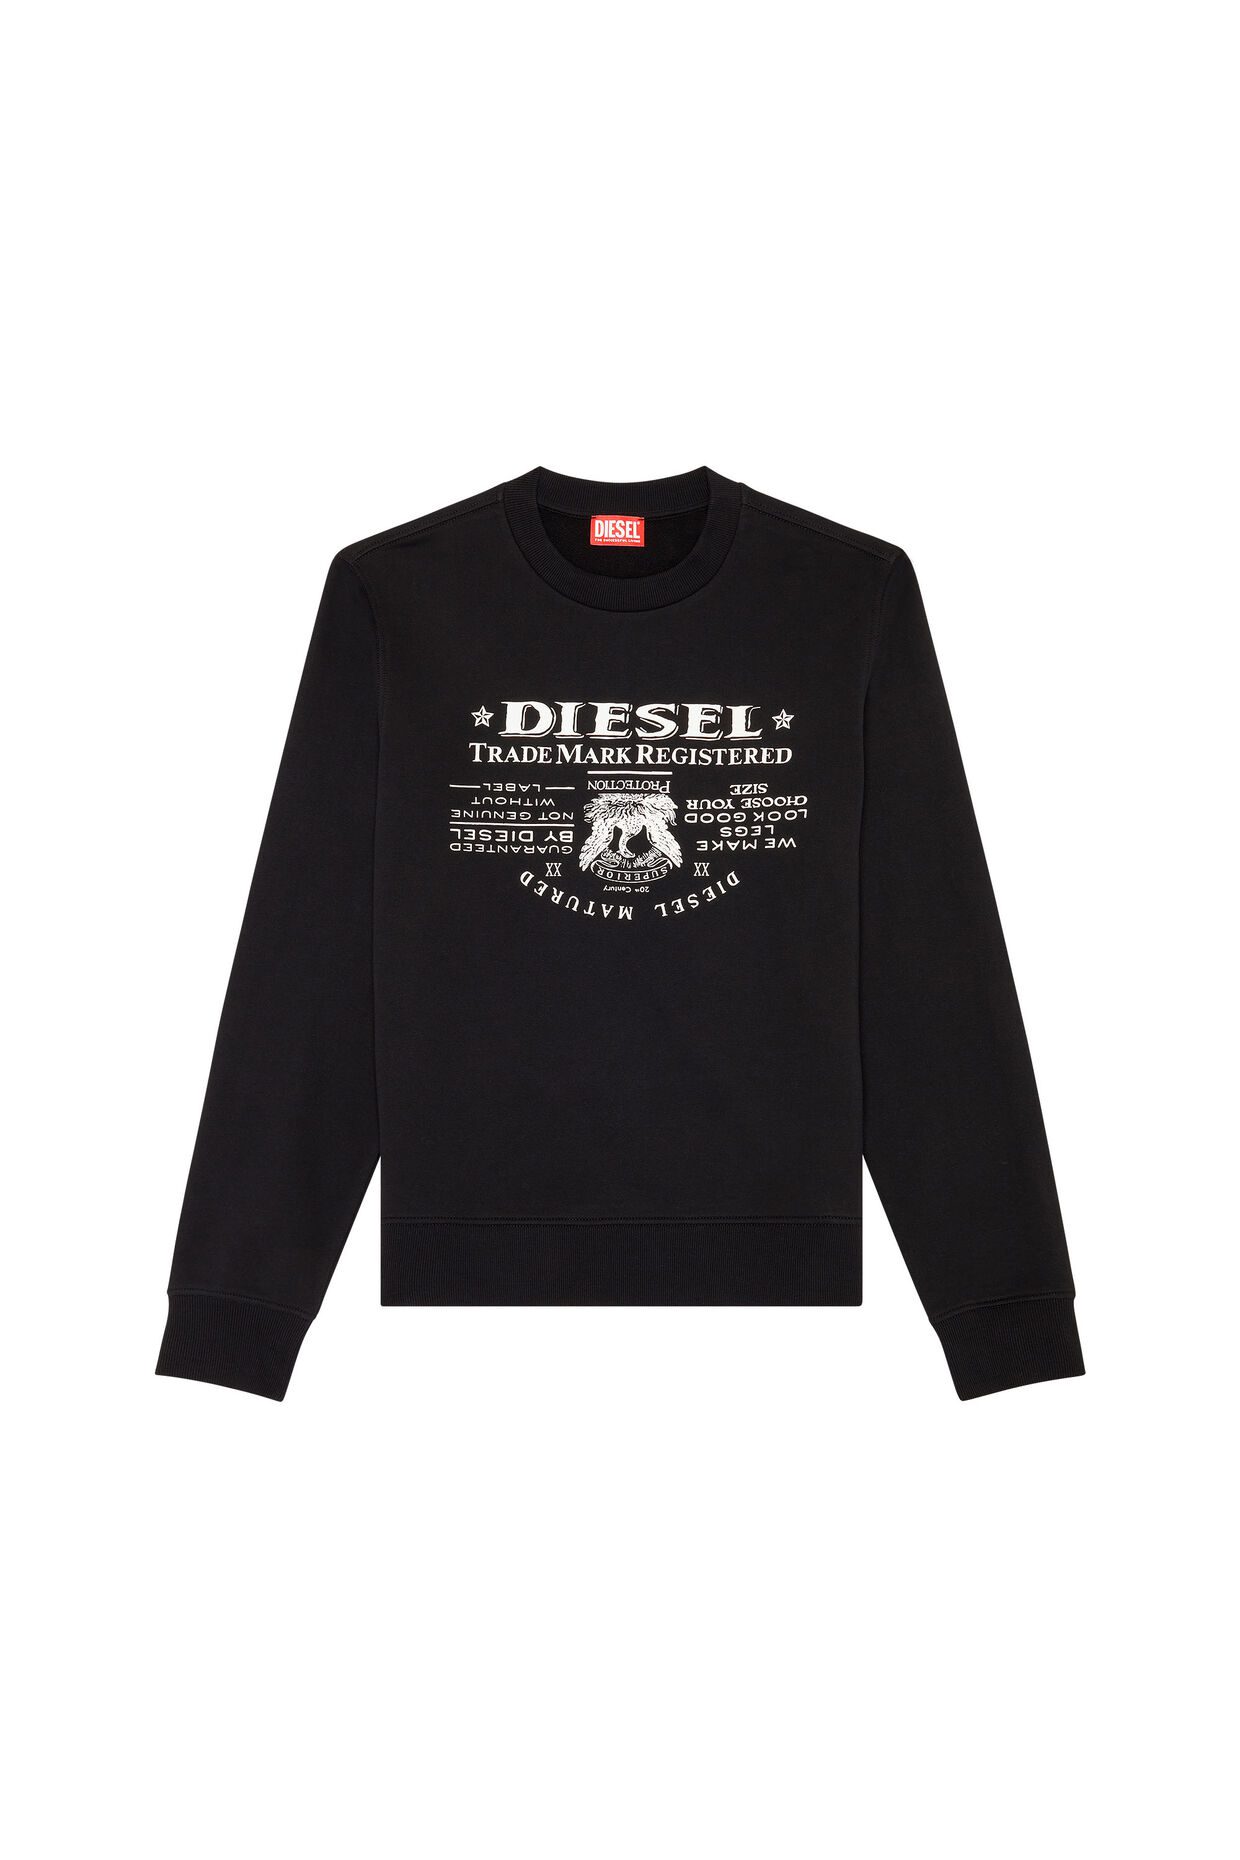 Diesel S-Ginn-L2 Sweat Shirt - Esquire Clothing